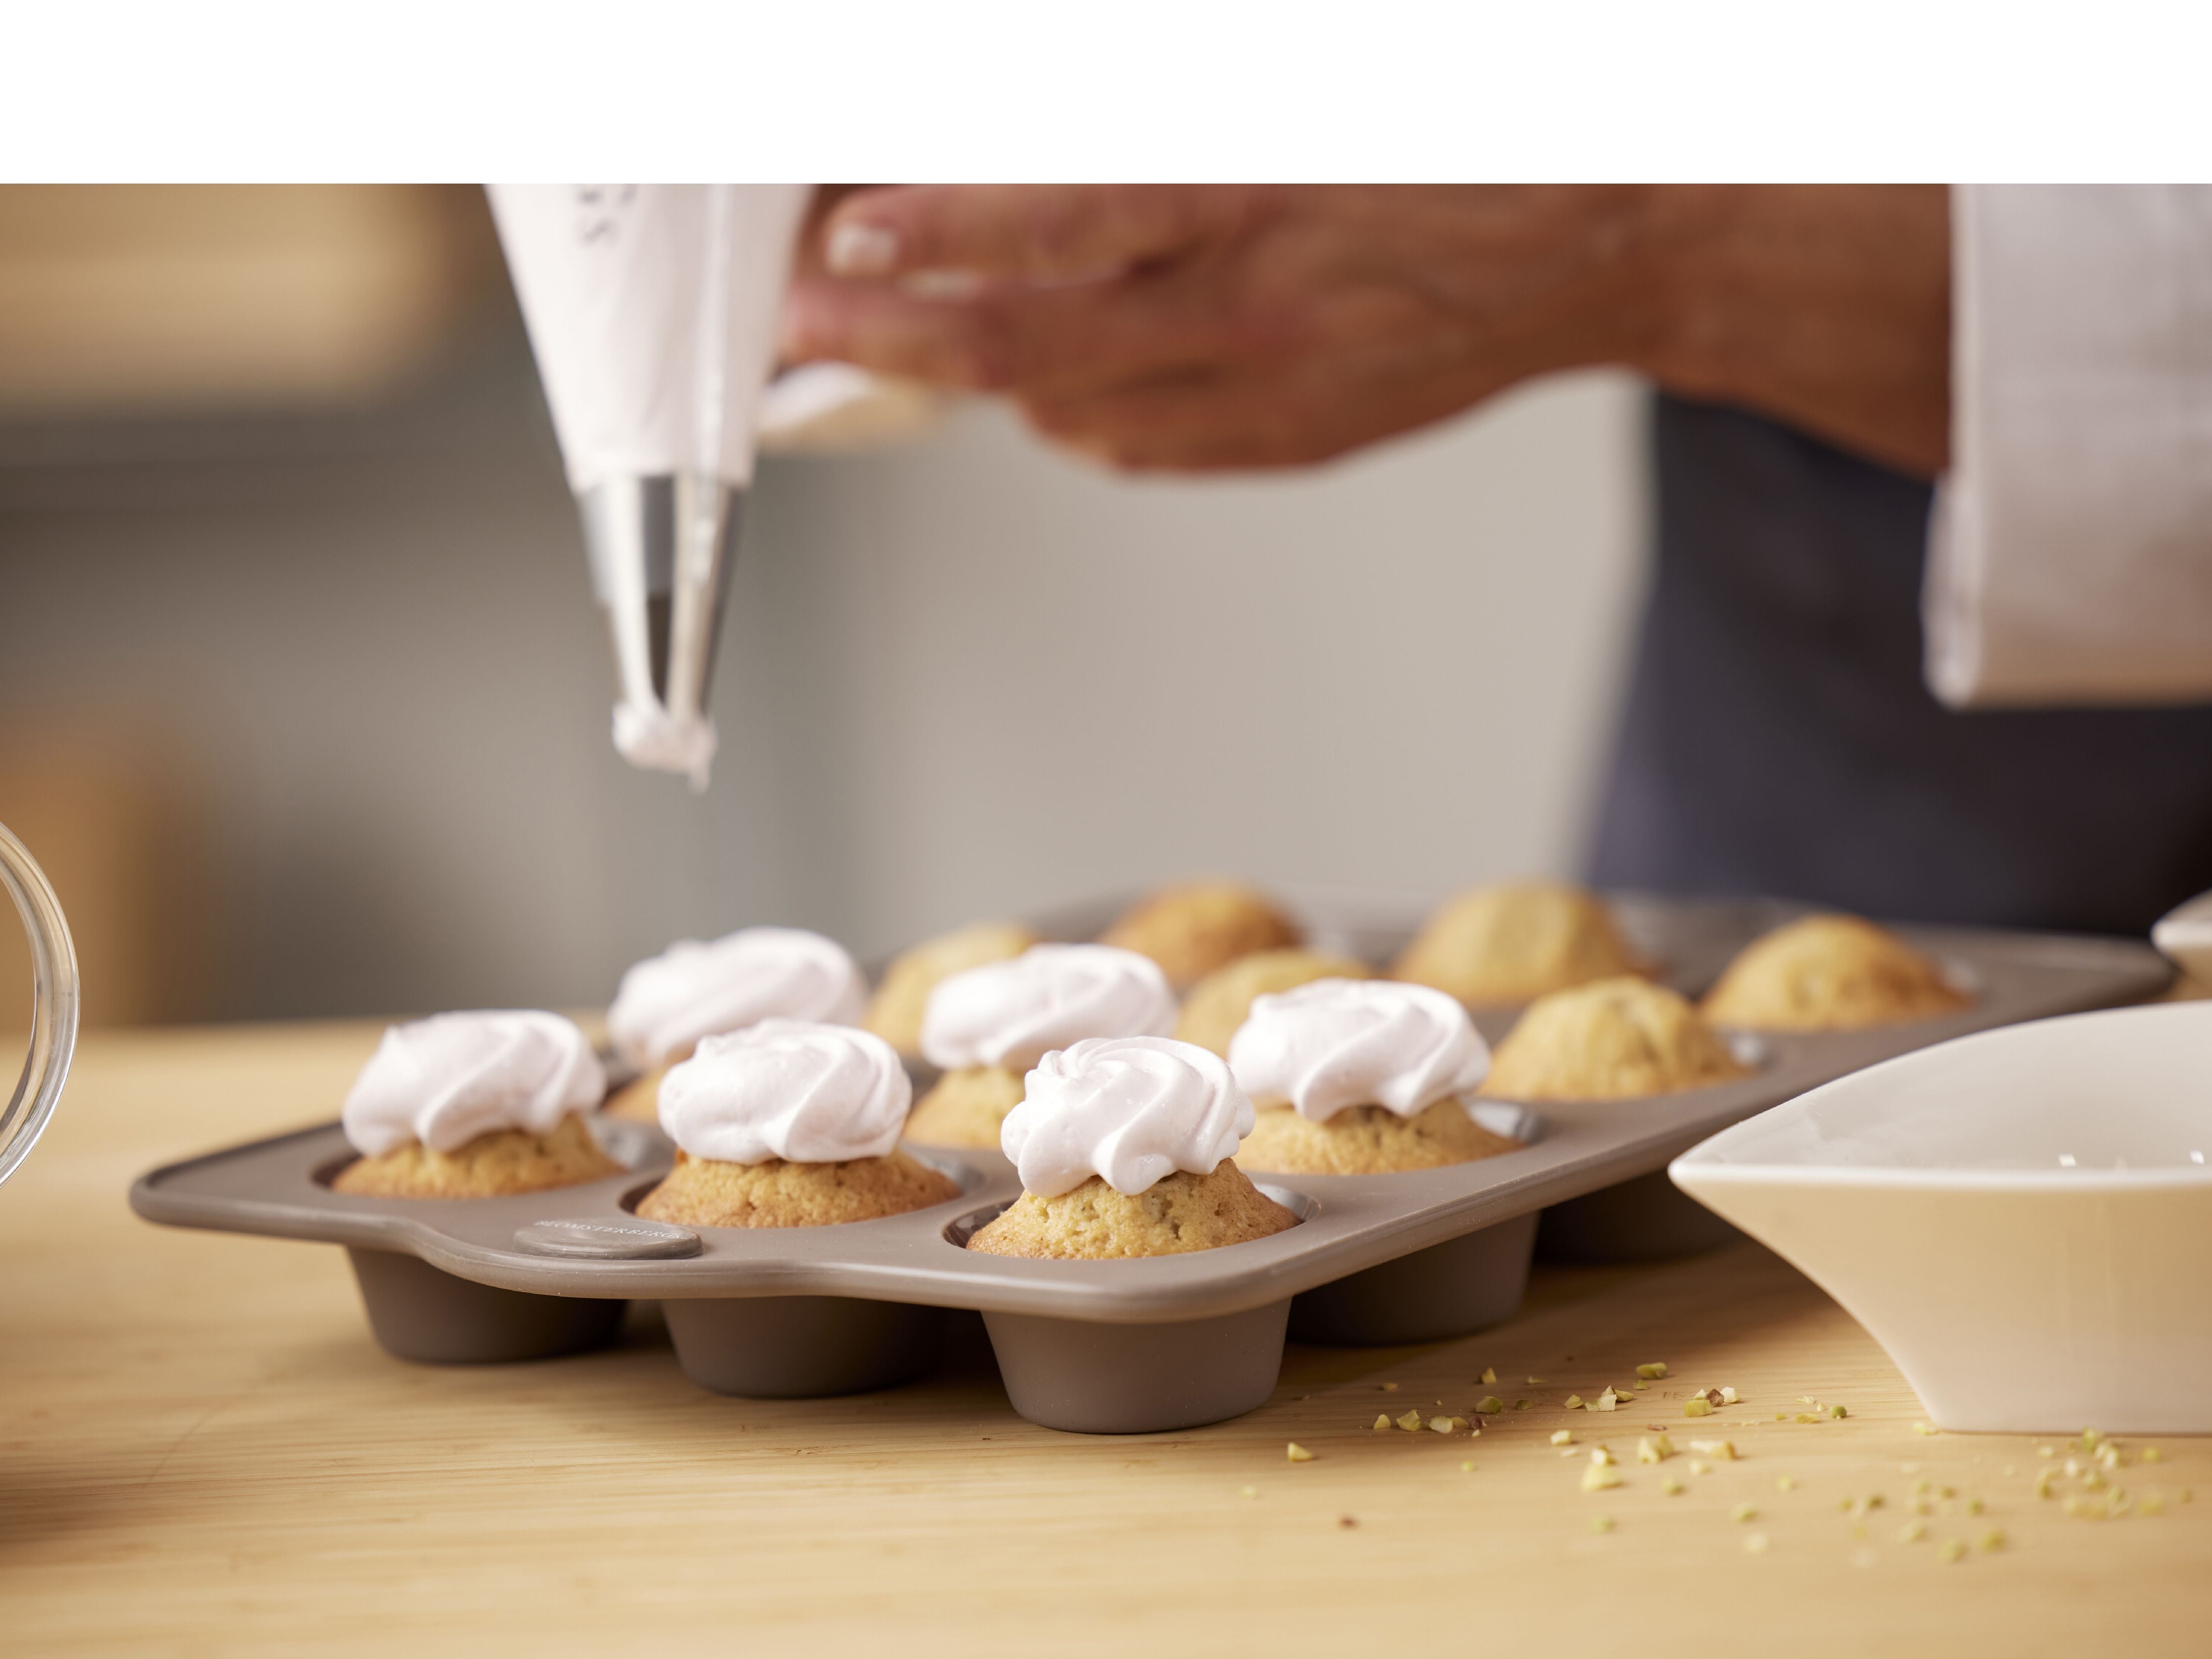 Blomsterbergs Muffin Pan til 12 stykker, latte